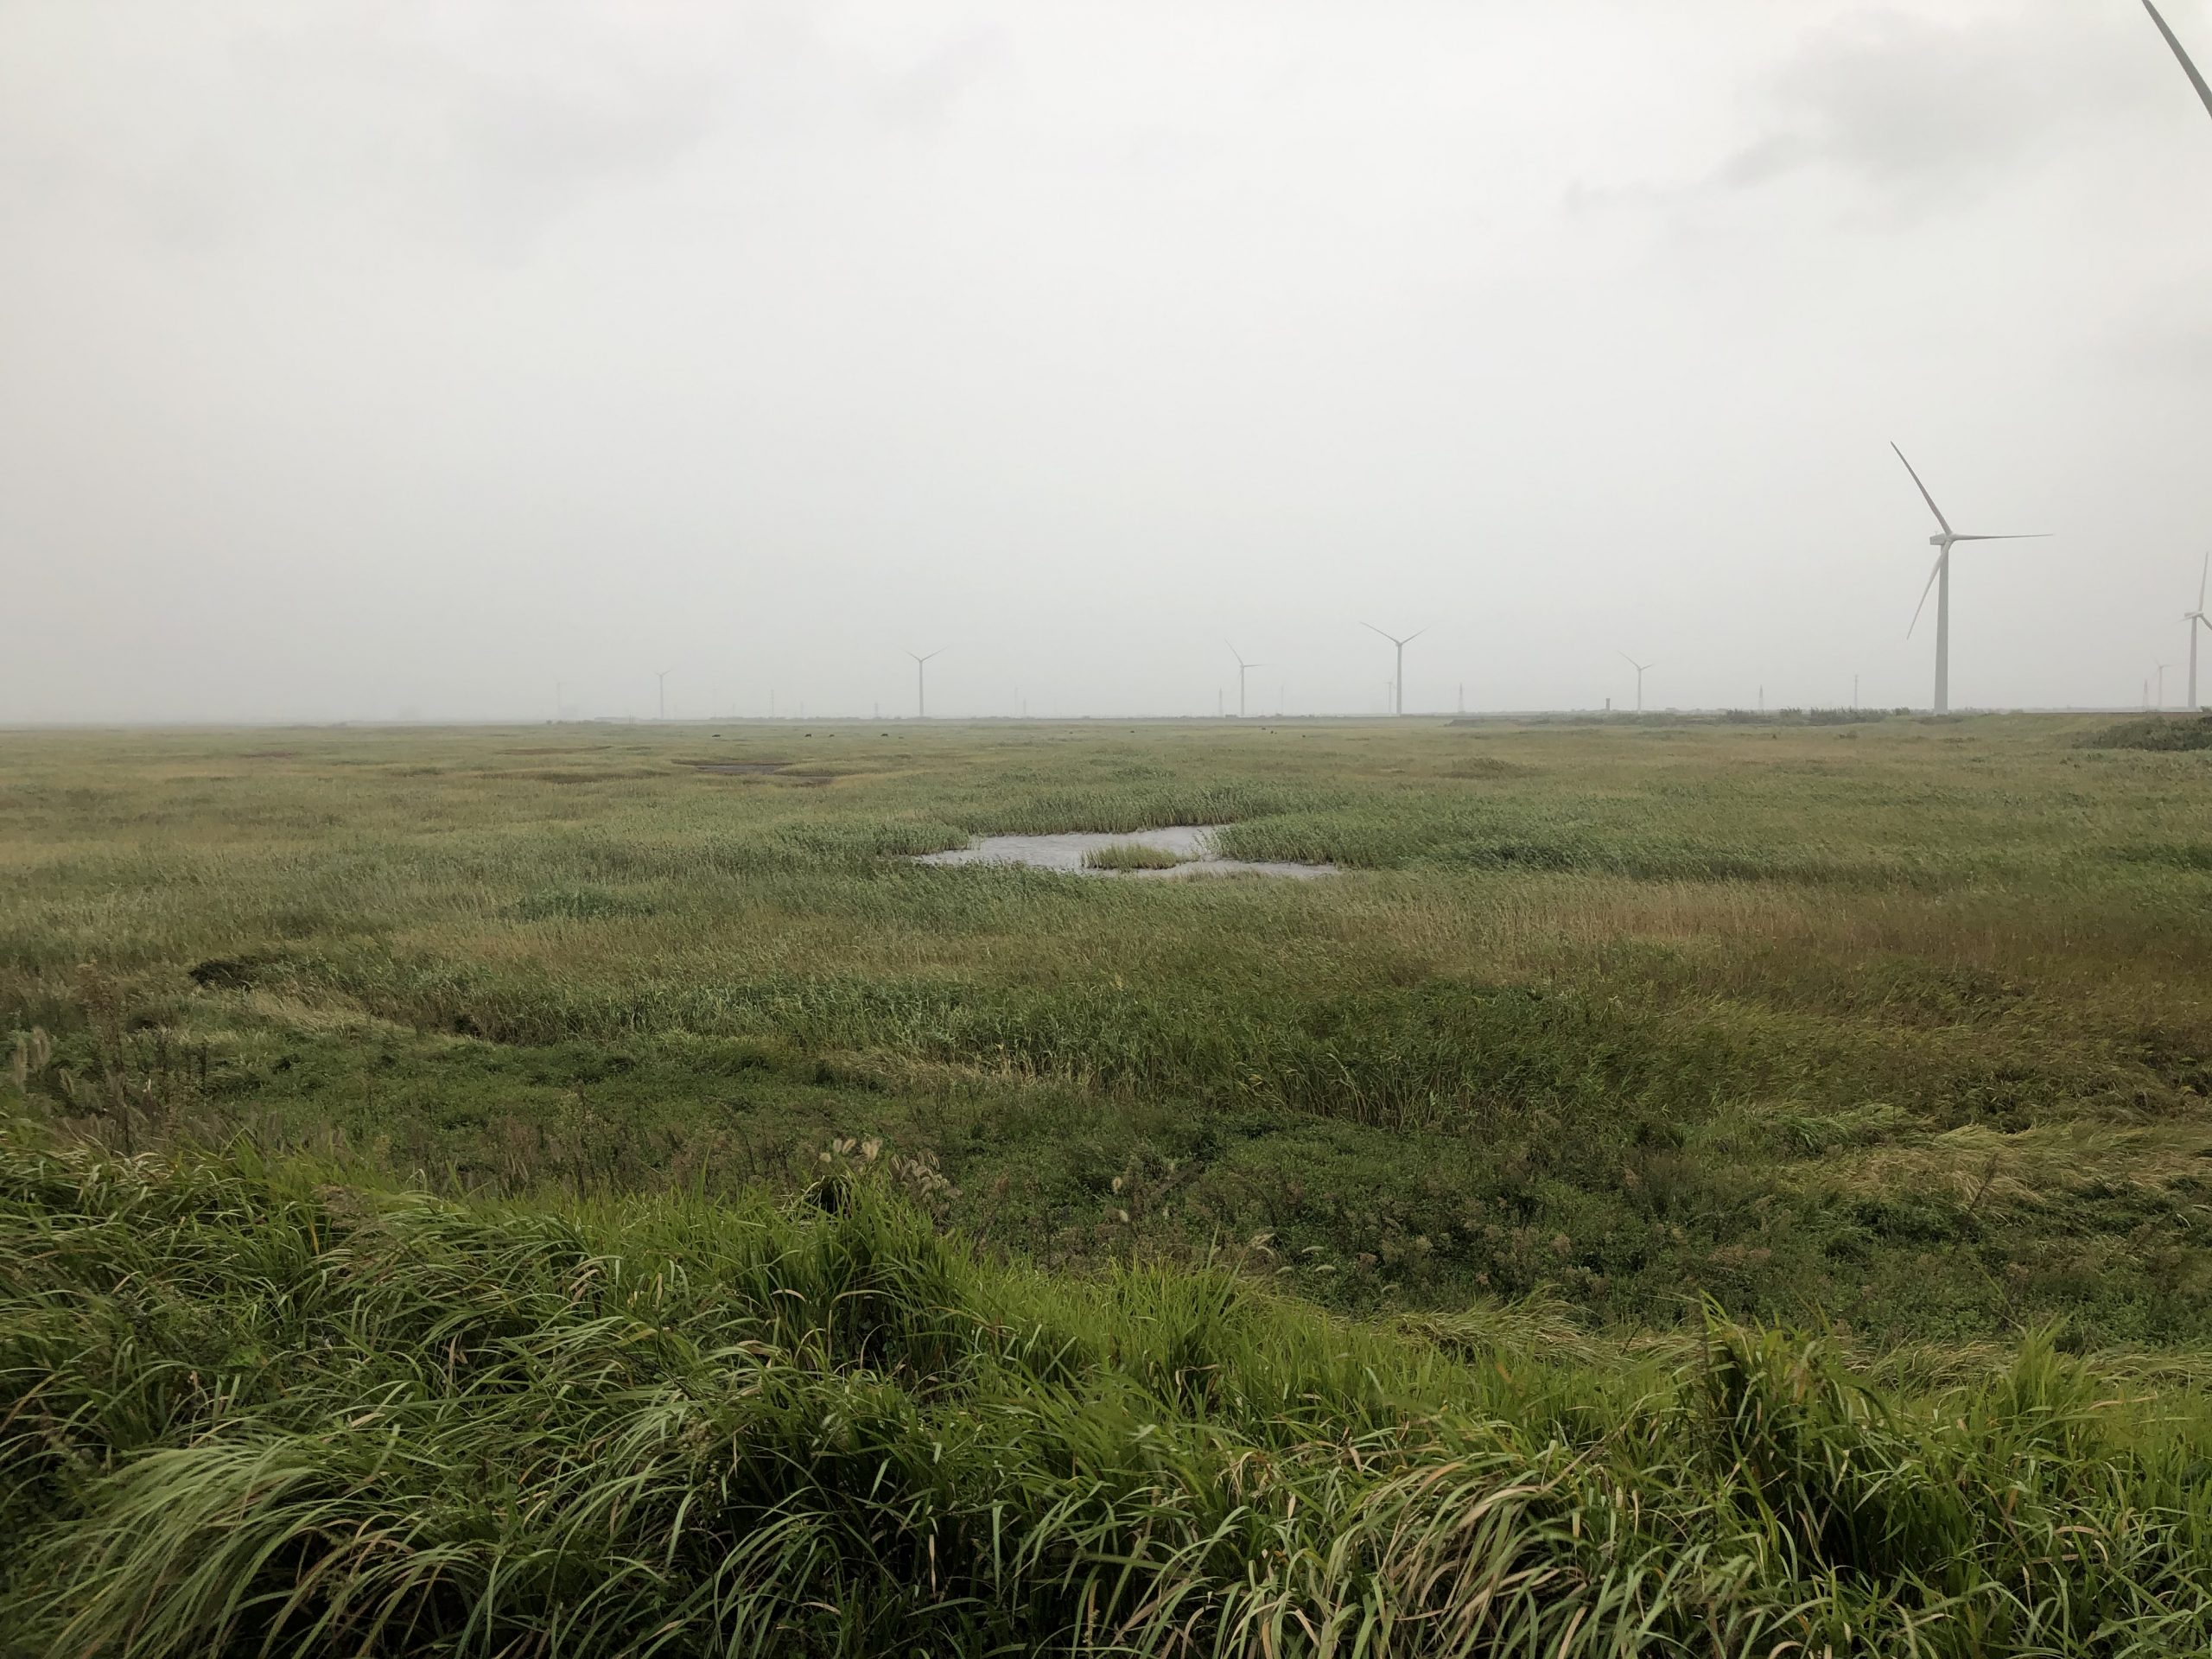 Qiadong wetland